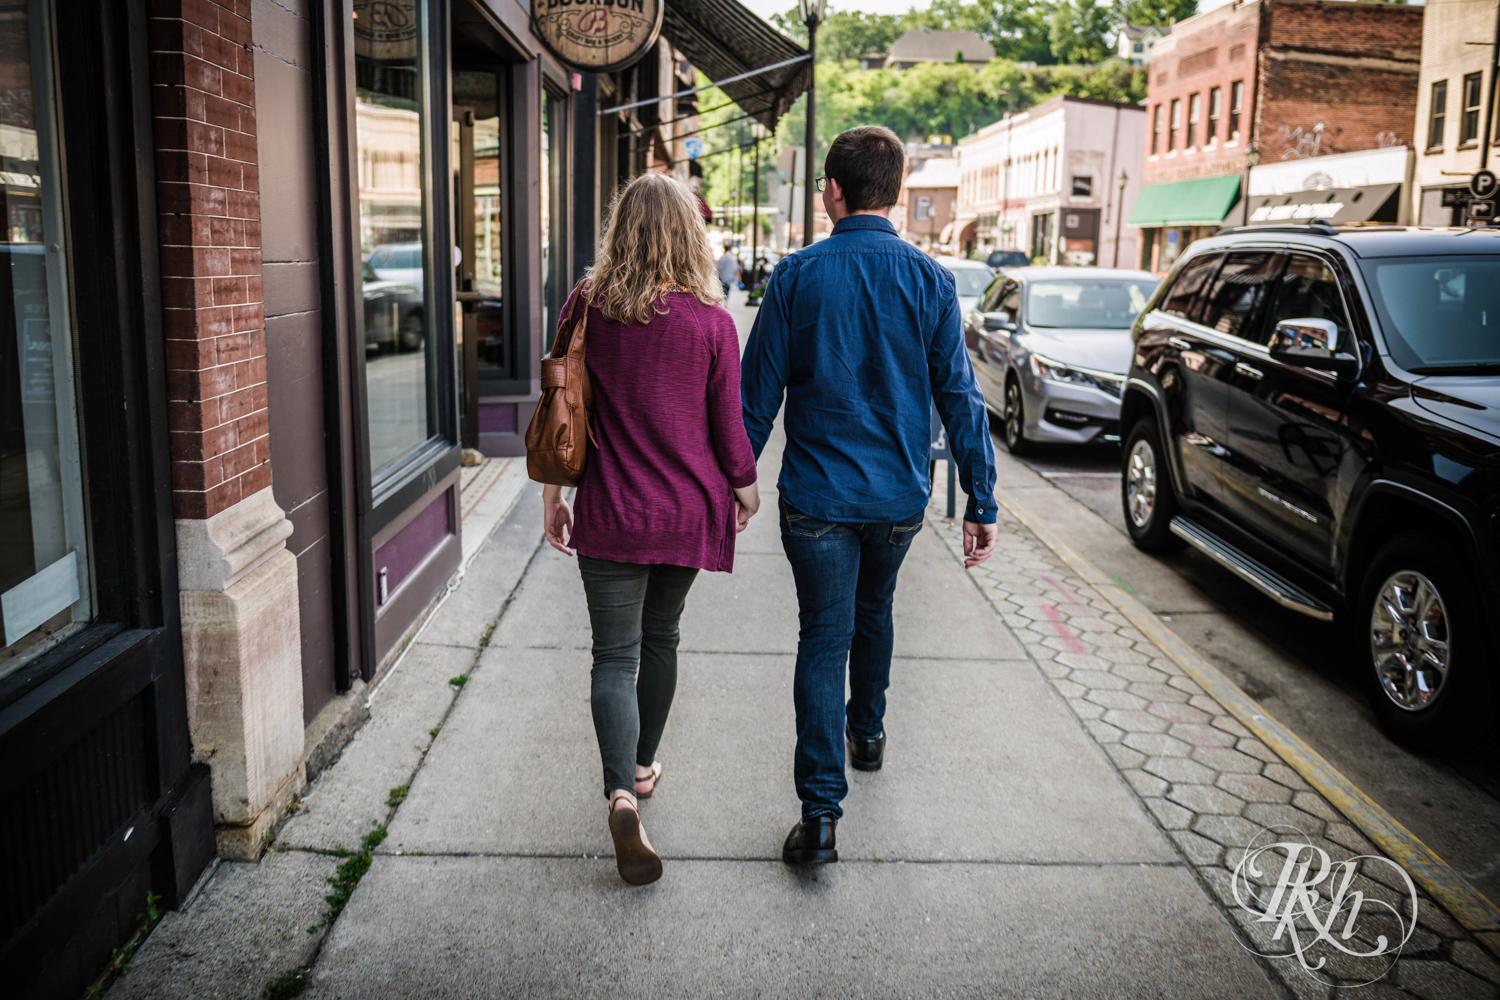 Man and woman walk down sidewalk in Stillwater, Minnesota.